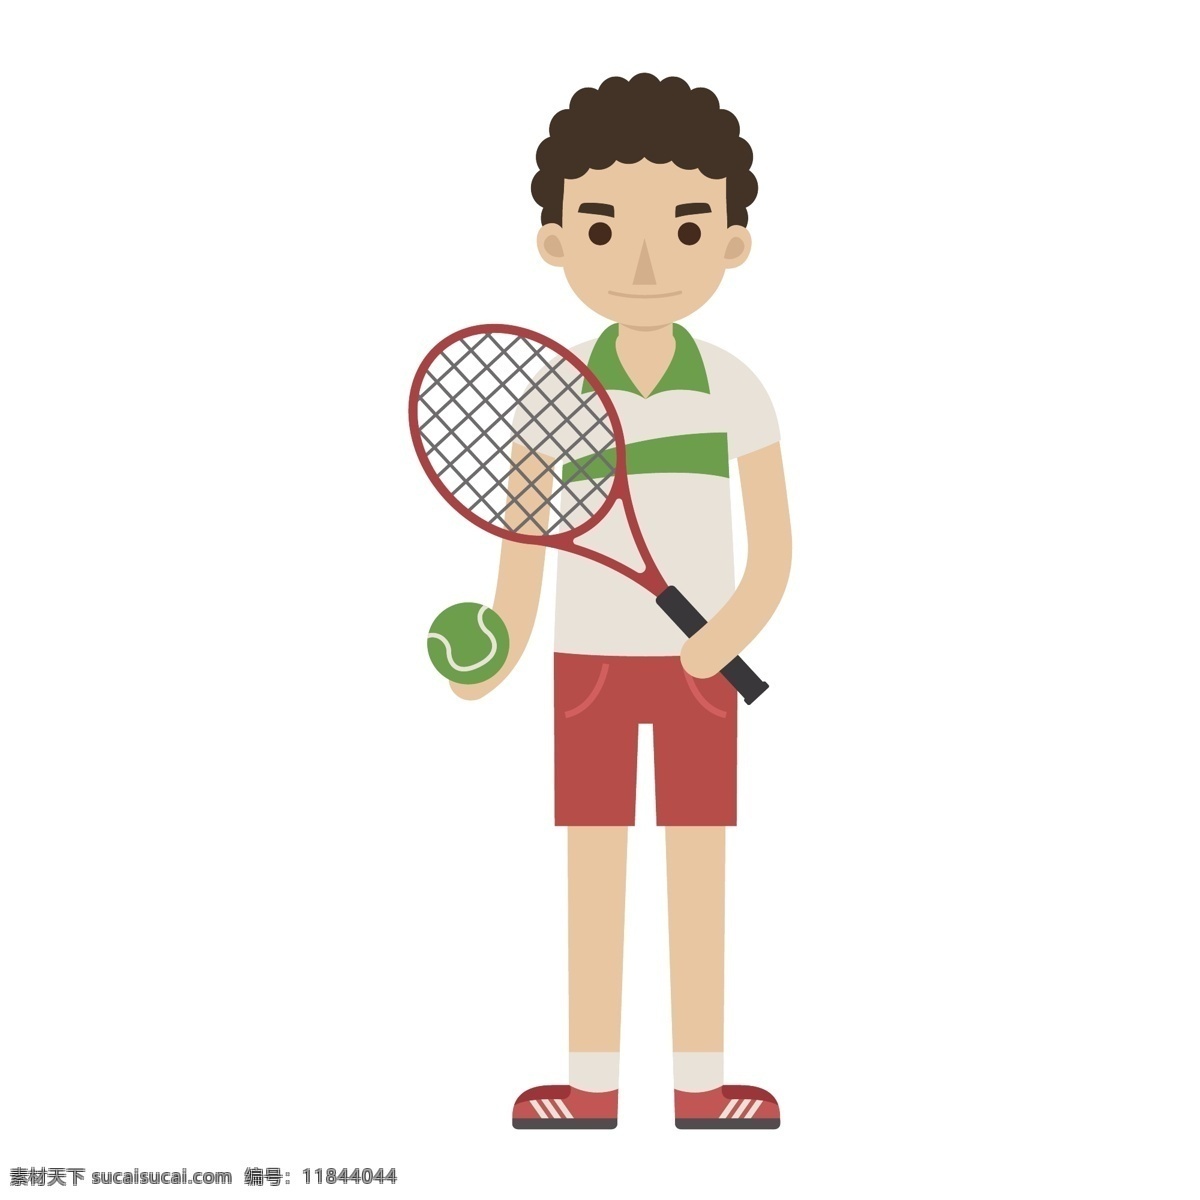 卡通 网球 男孩 矢量 卡通男孩 运动员 网球运动员 男性 男性运动员 卡通运动员 卡通网球